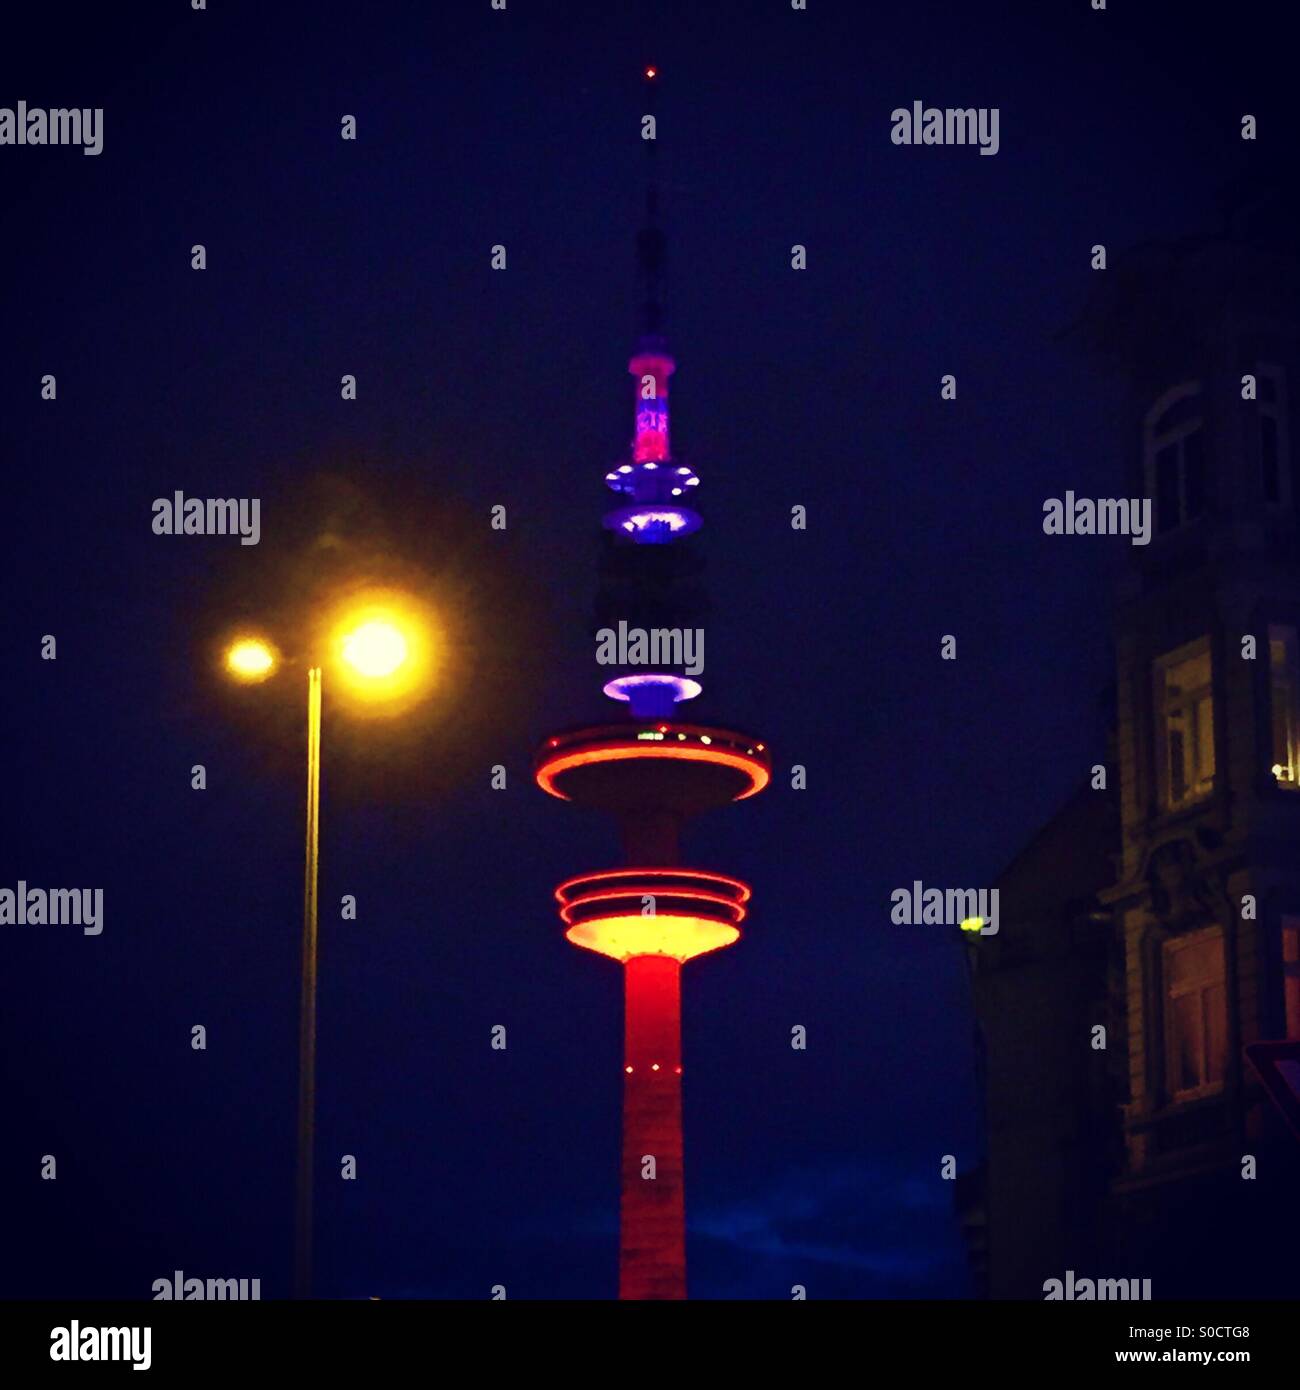 Hamburg's TV tower lit up at night Stock Photo